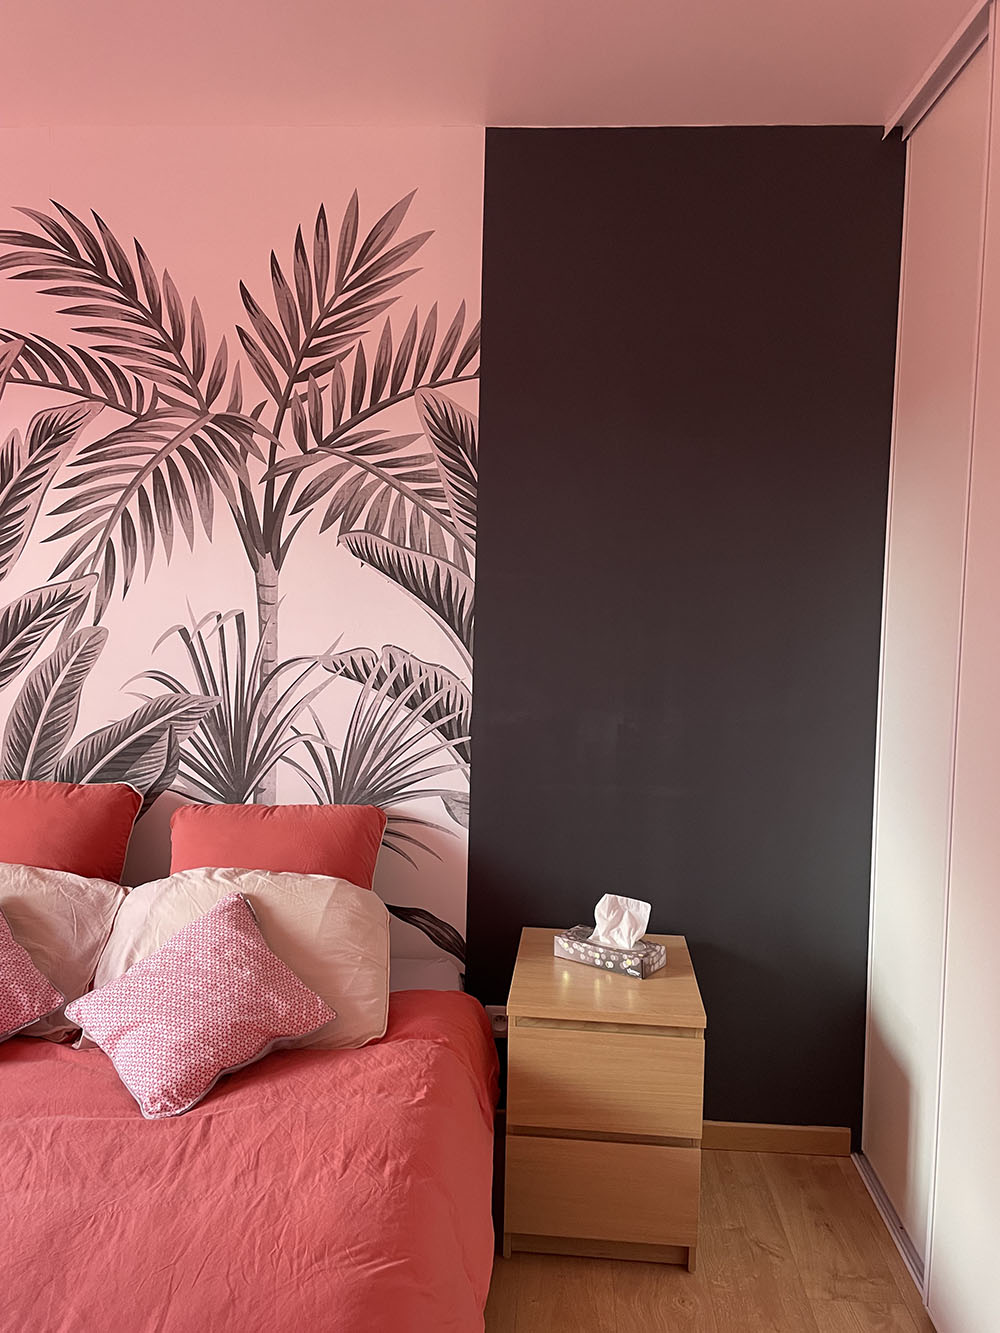 jolie chambre rose avec papier peint végétal